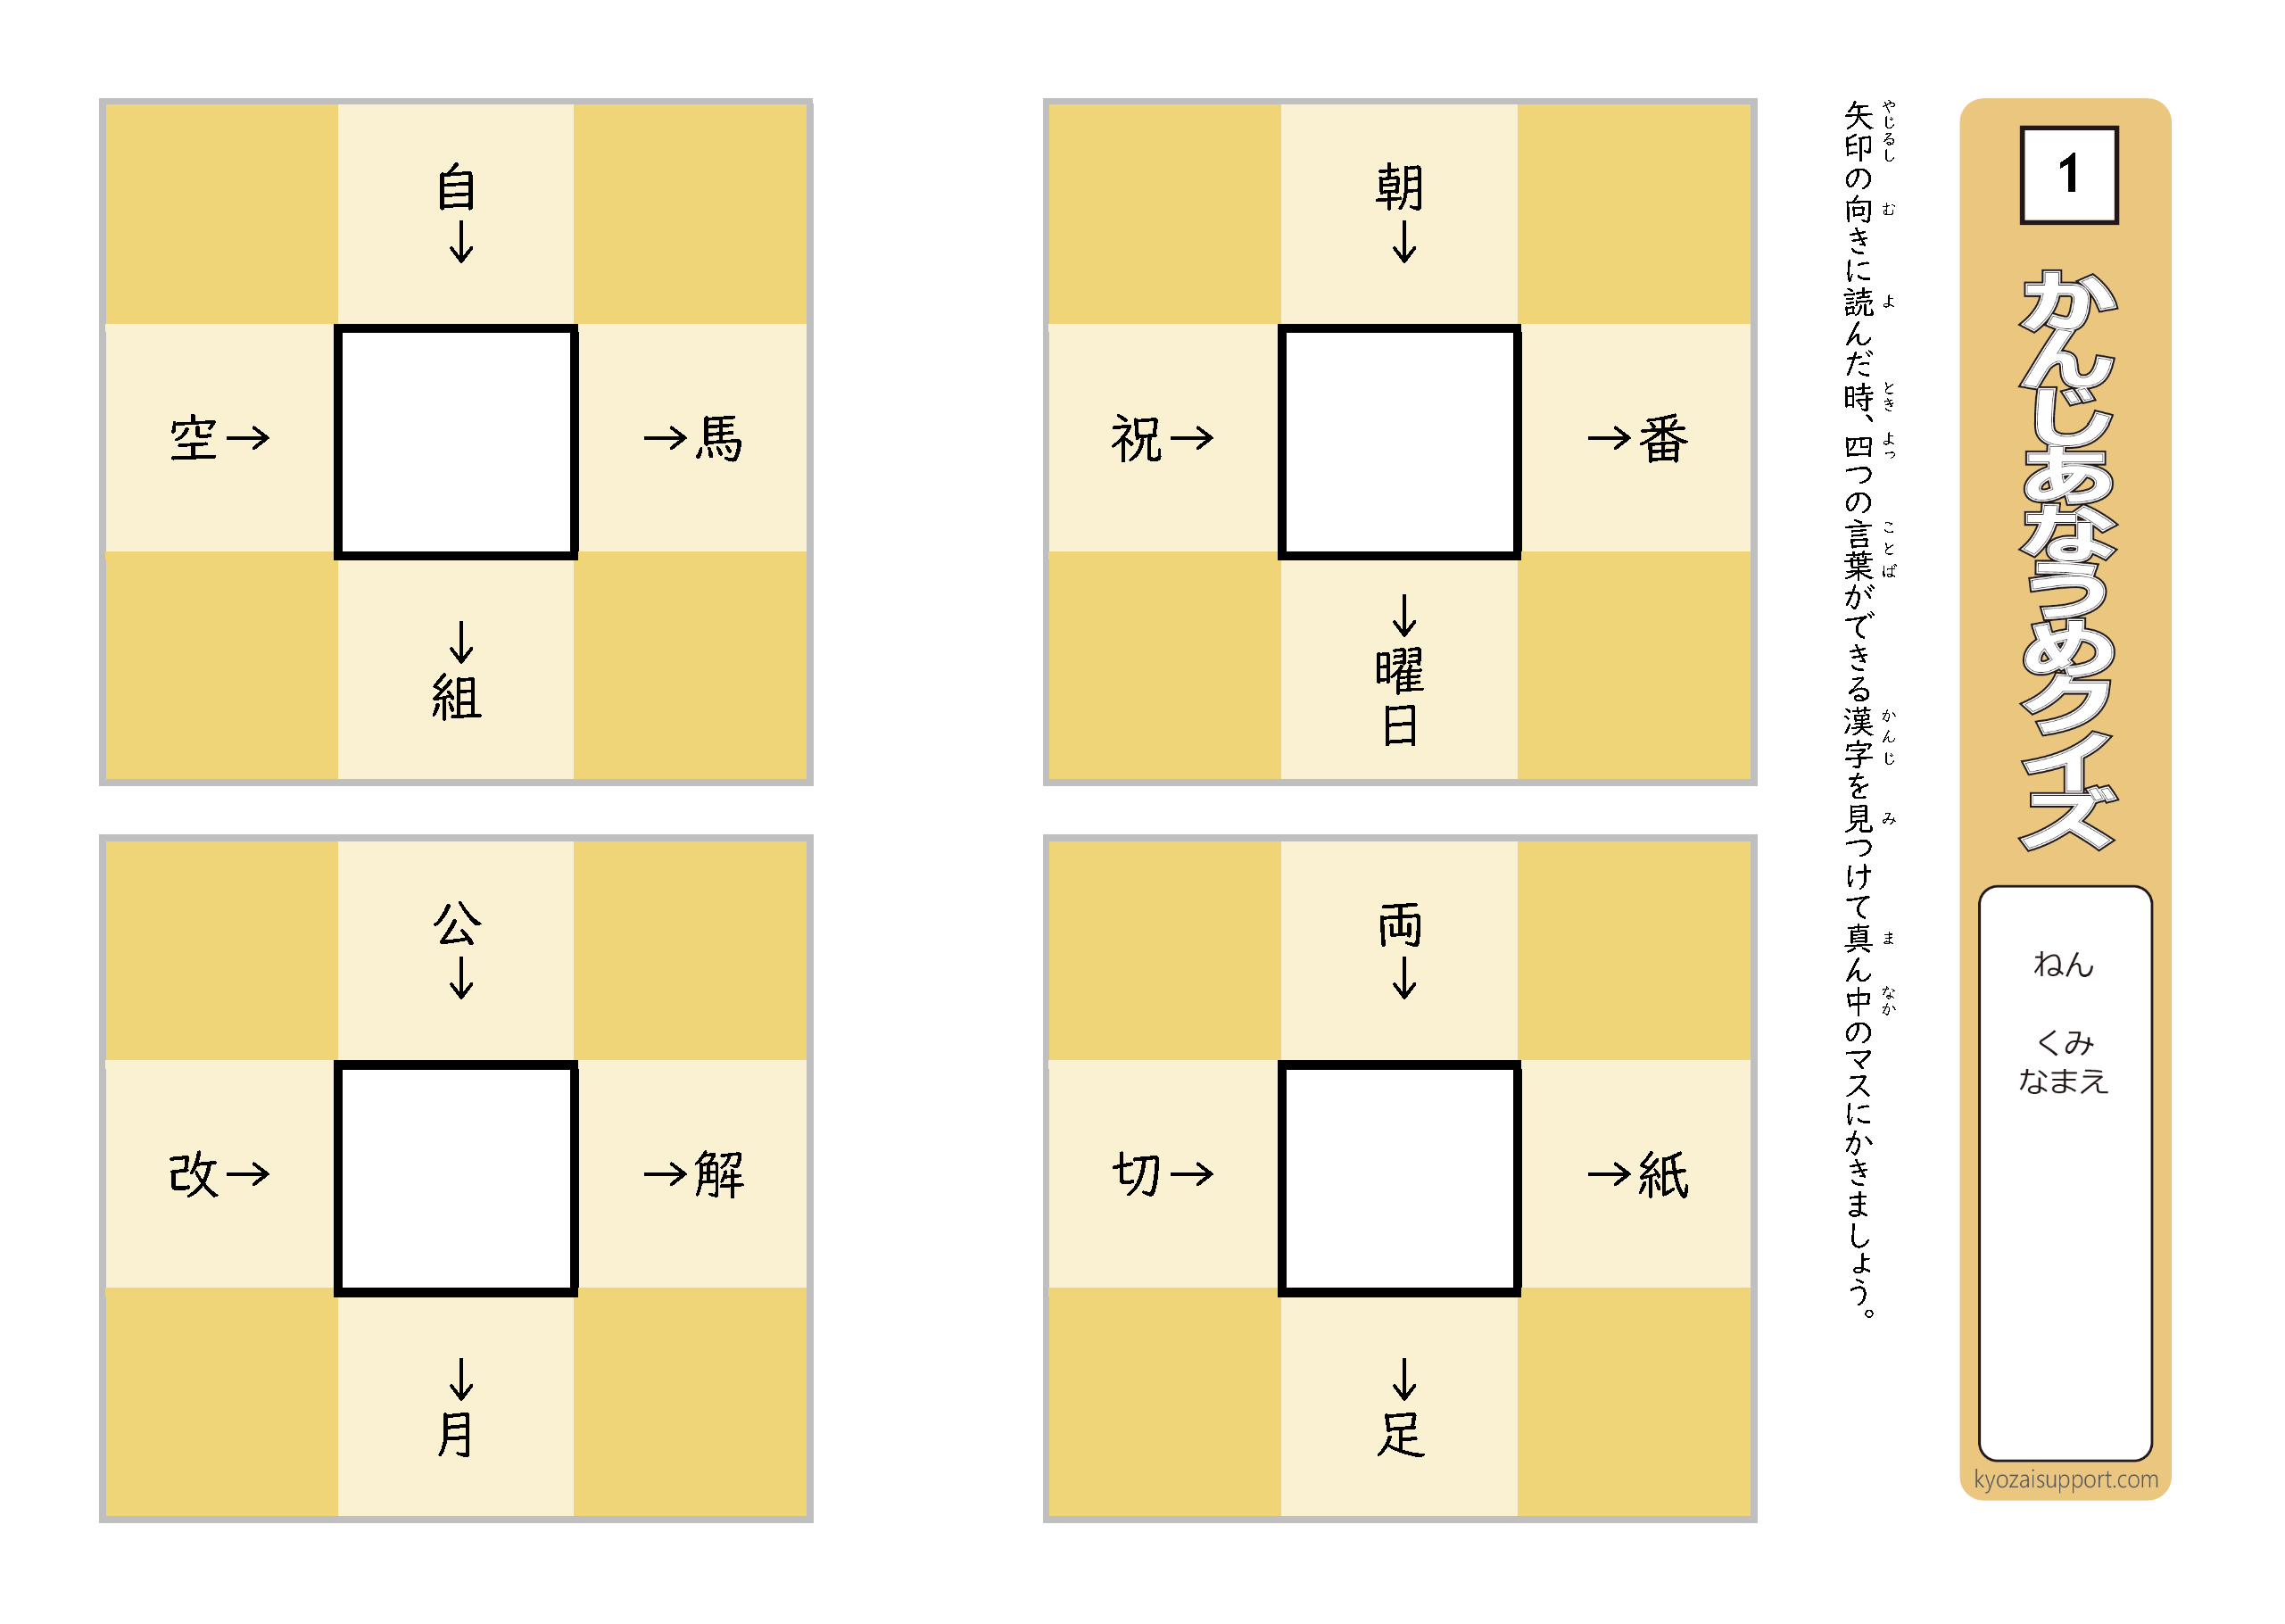 共通する漢字を見つける 漢字穴埋めクイズ わくわく教材